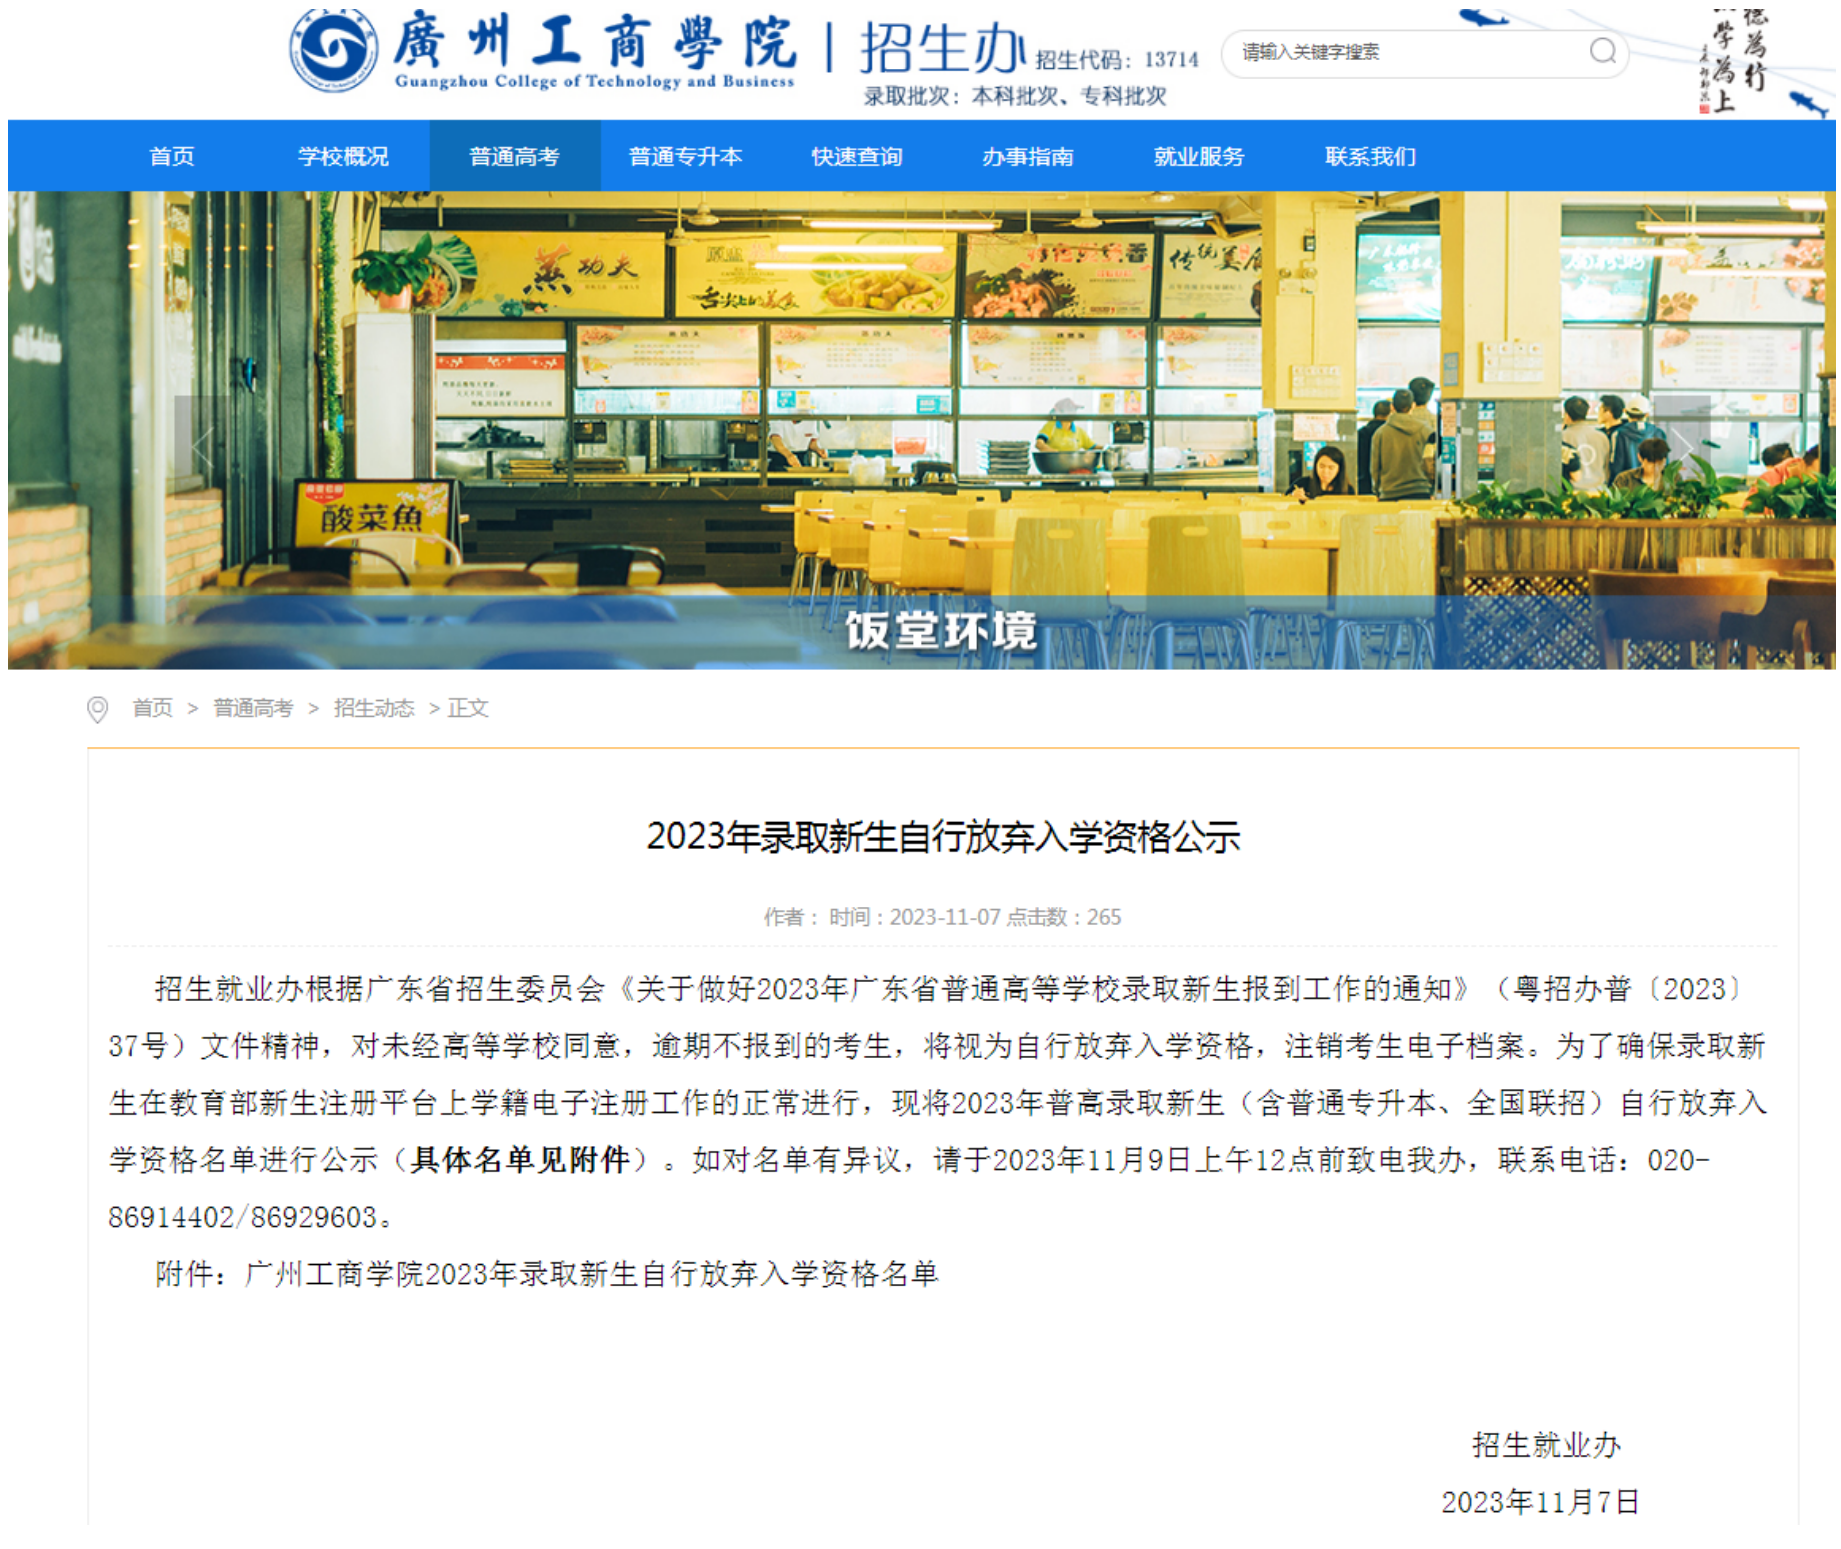 广州工商学院公示2023年新生自行放弃入学资格名单